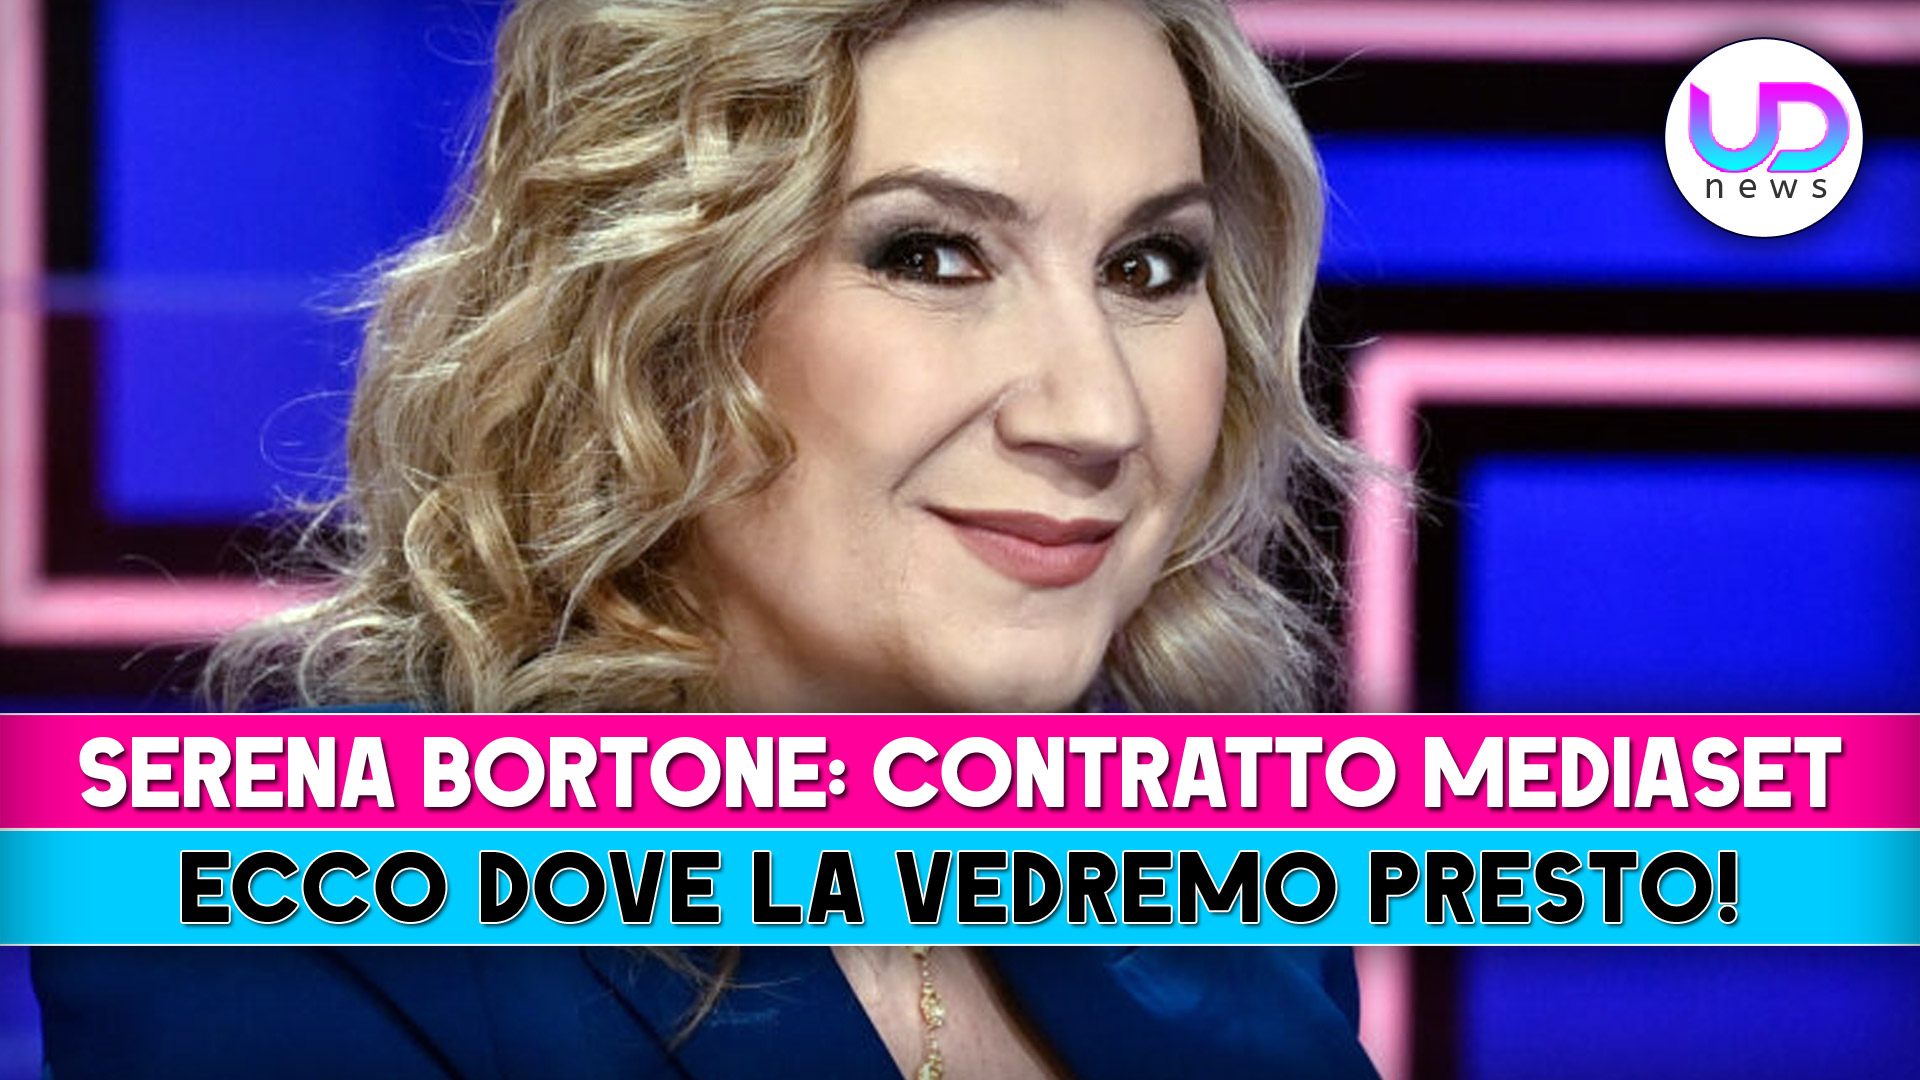 Mediaset, Contratto A Serena Bortone: Ecco Dove La Vedremo!